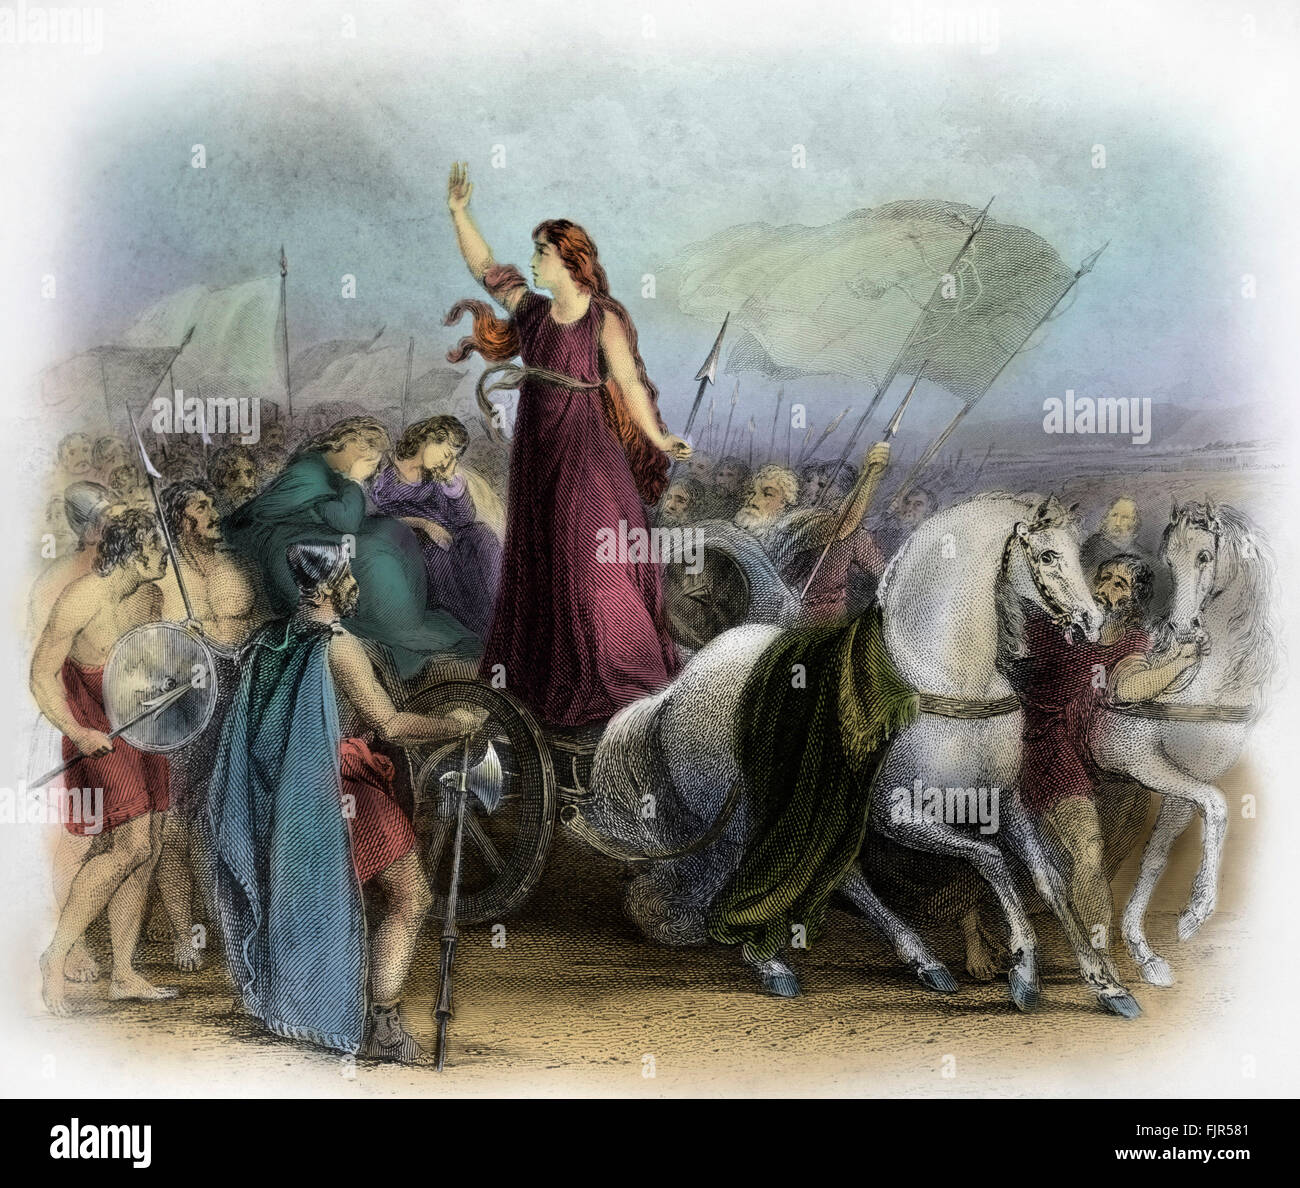 Boadicea oder Boadicea, Königin des Stammes britische Icener, einem keltischen Volksstamm, der einen Aufstand gegen die Besatzungsmacht des römischen Reiches führte. Bildunterschrift lautet: "Boadicea Haranging die Briten." Boadicea starb circa Anzeige 60 oder 61. Stockfoto